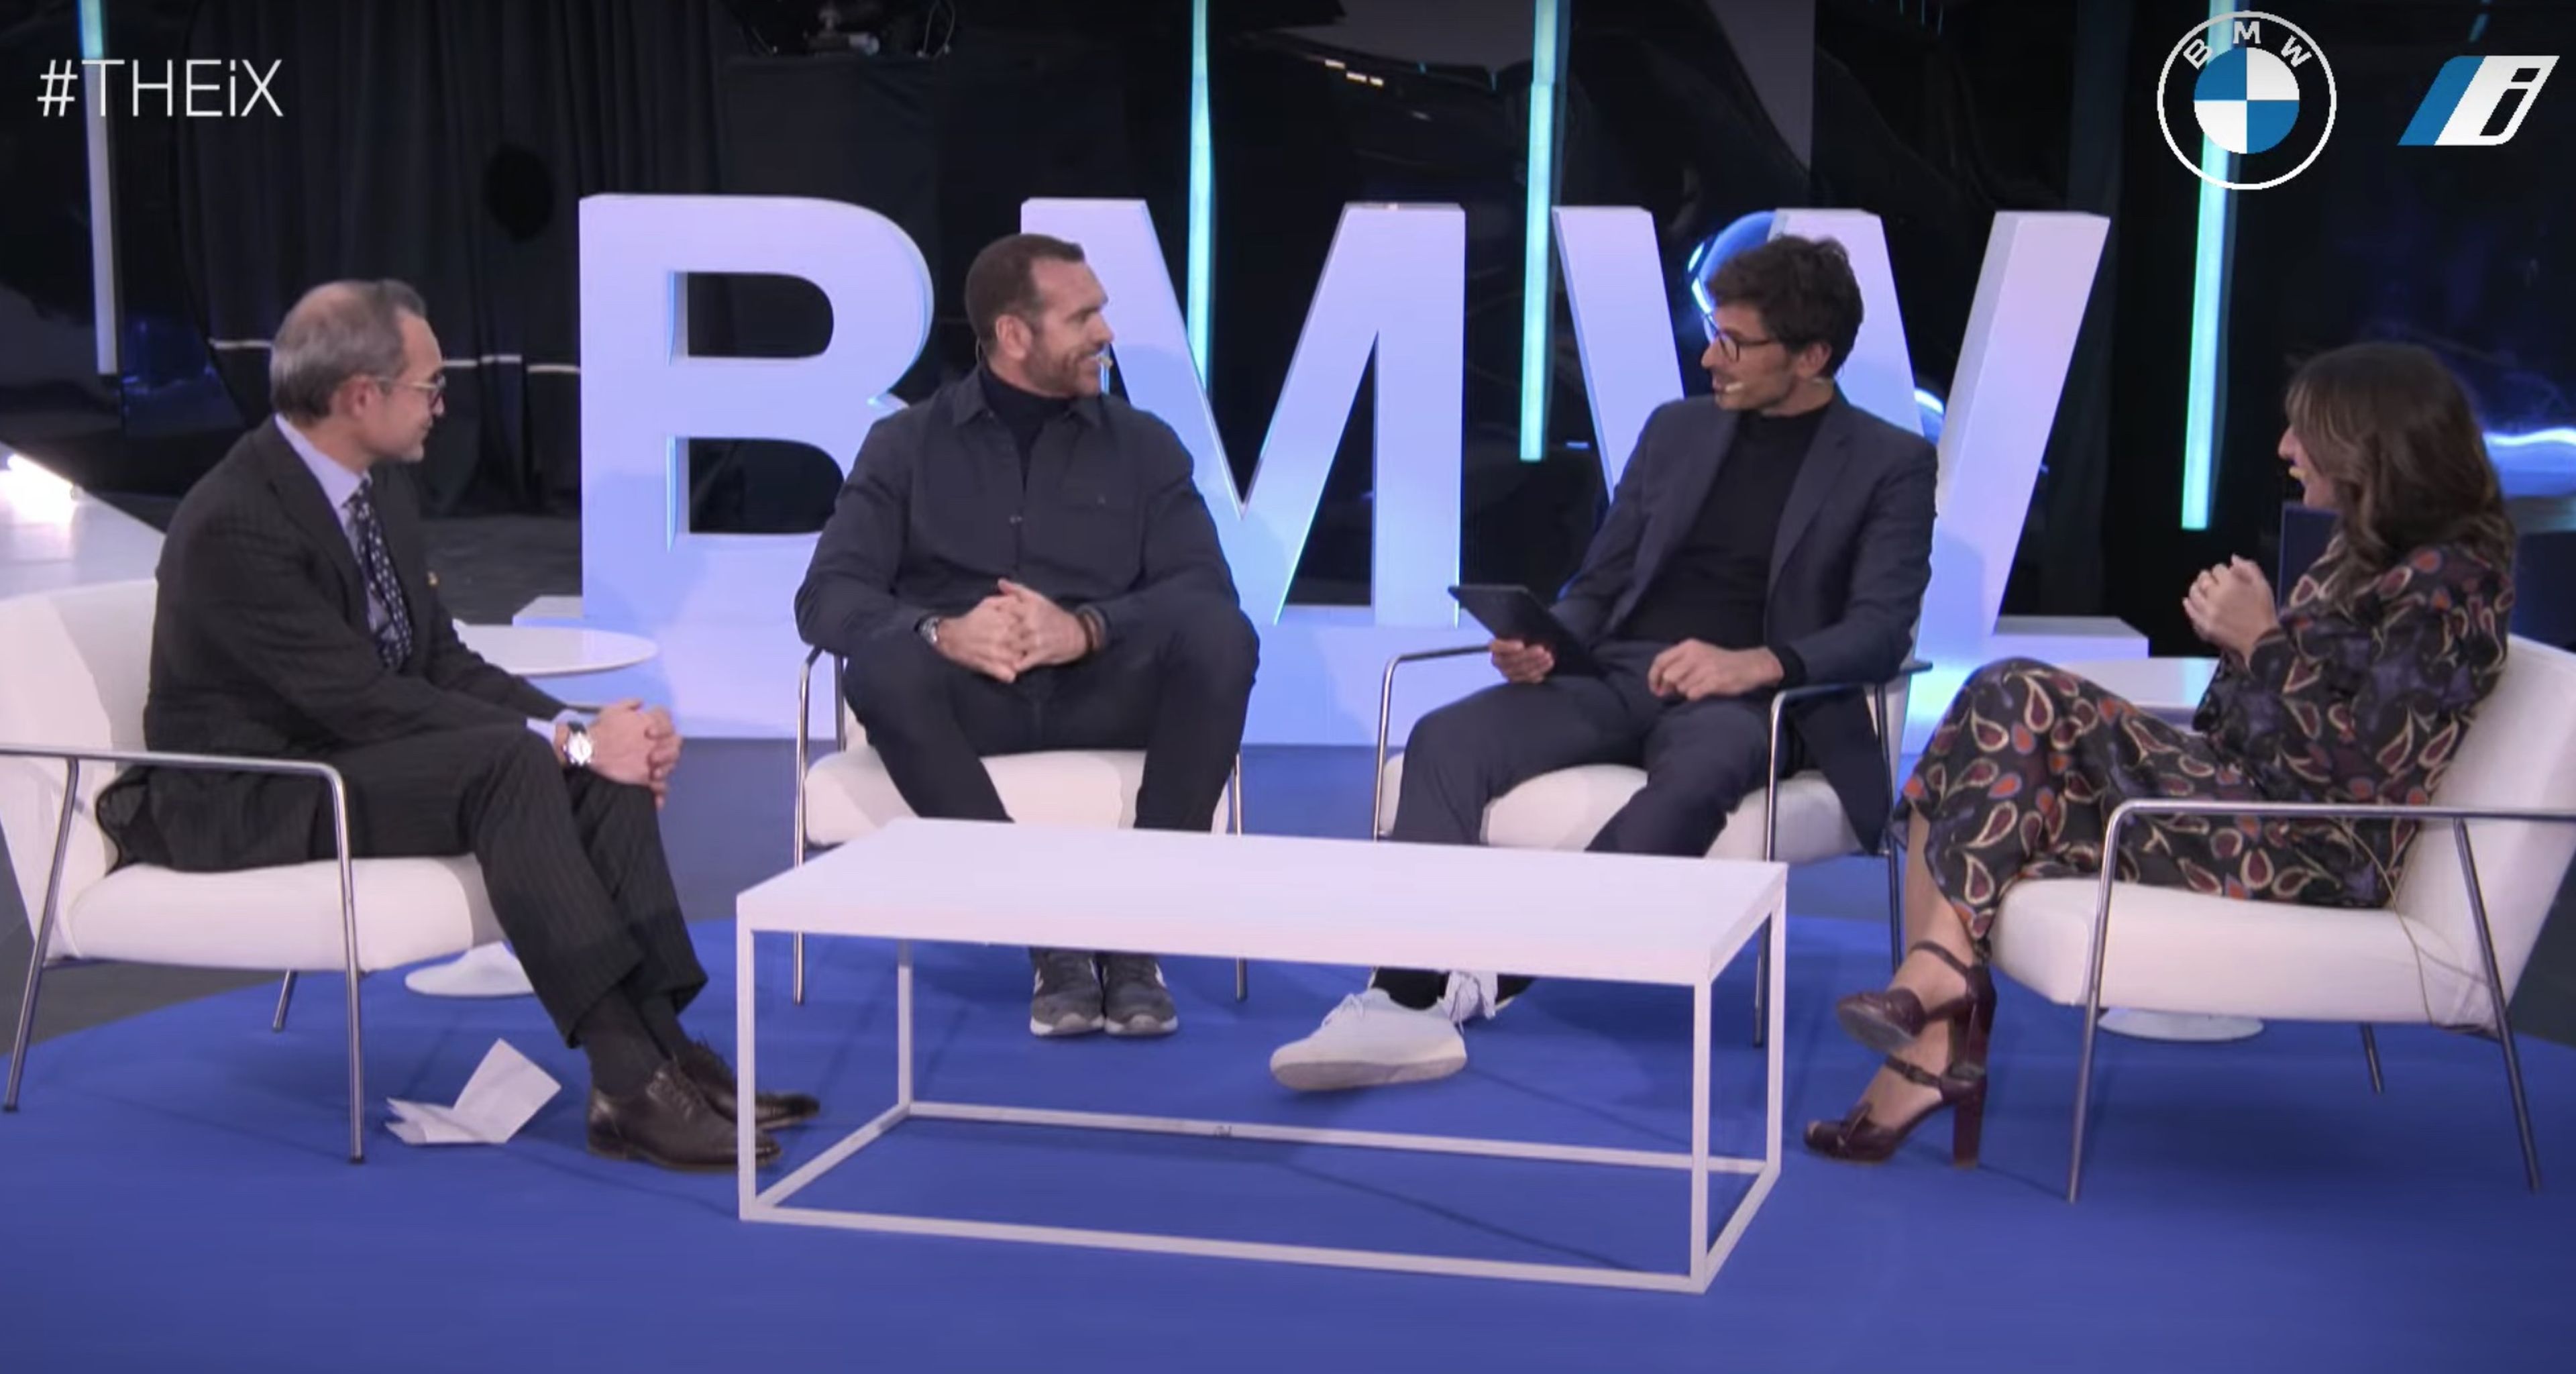 José Manuel López-Galiacho, Acciona; Felipe Romero, BMW; Andrés Velencoso, embajador de BMW; y Mónica Chao, directora de sostenibilidad de Ikea, en la mesa redonda sobre circularidad y transformación. Y futuro.